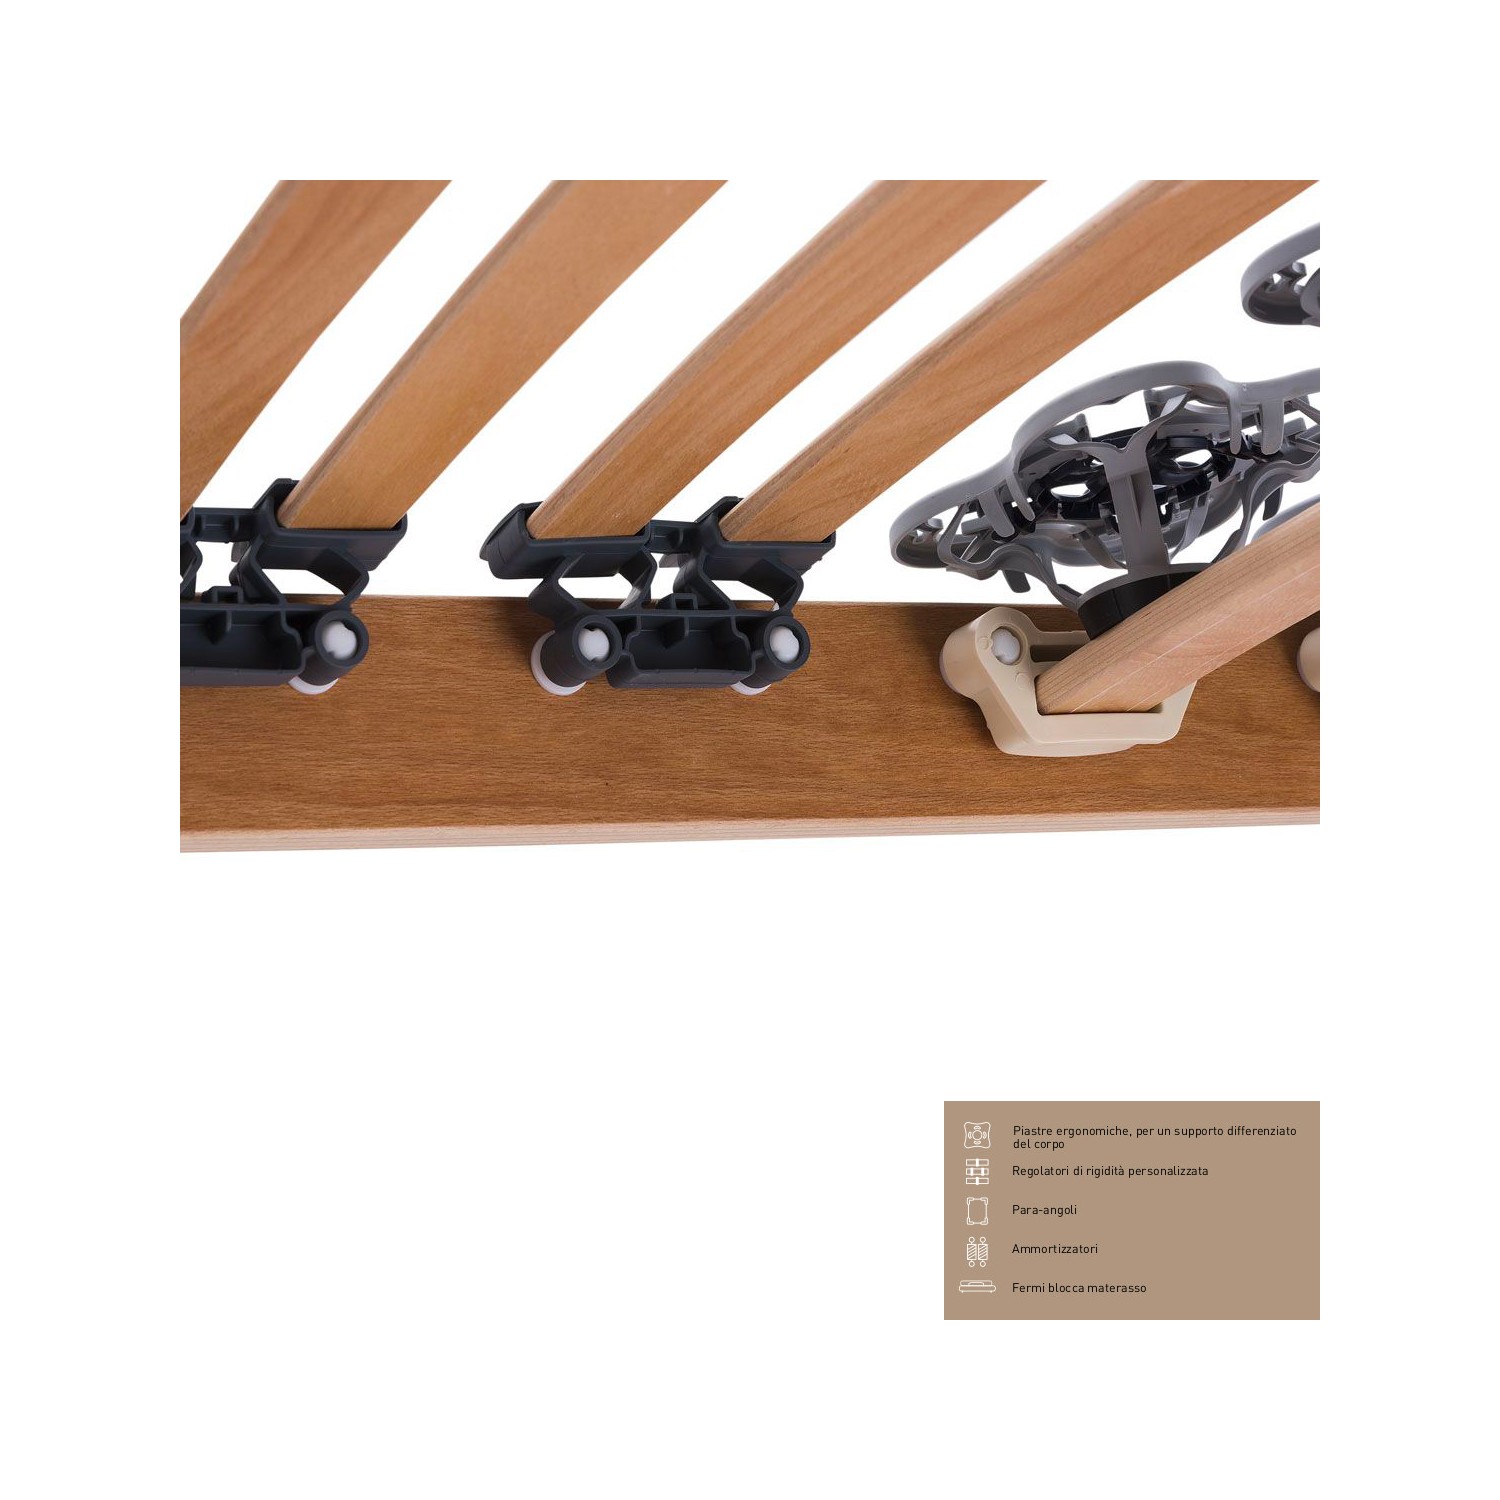 Rete Magniflex ERGO DUE FISSA cm 180 x 190/195/200 piastre ergonomiche, regolatori di rigidità doghe legno